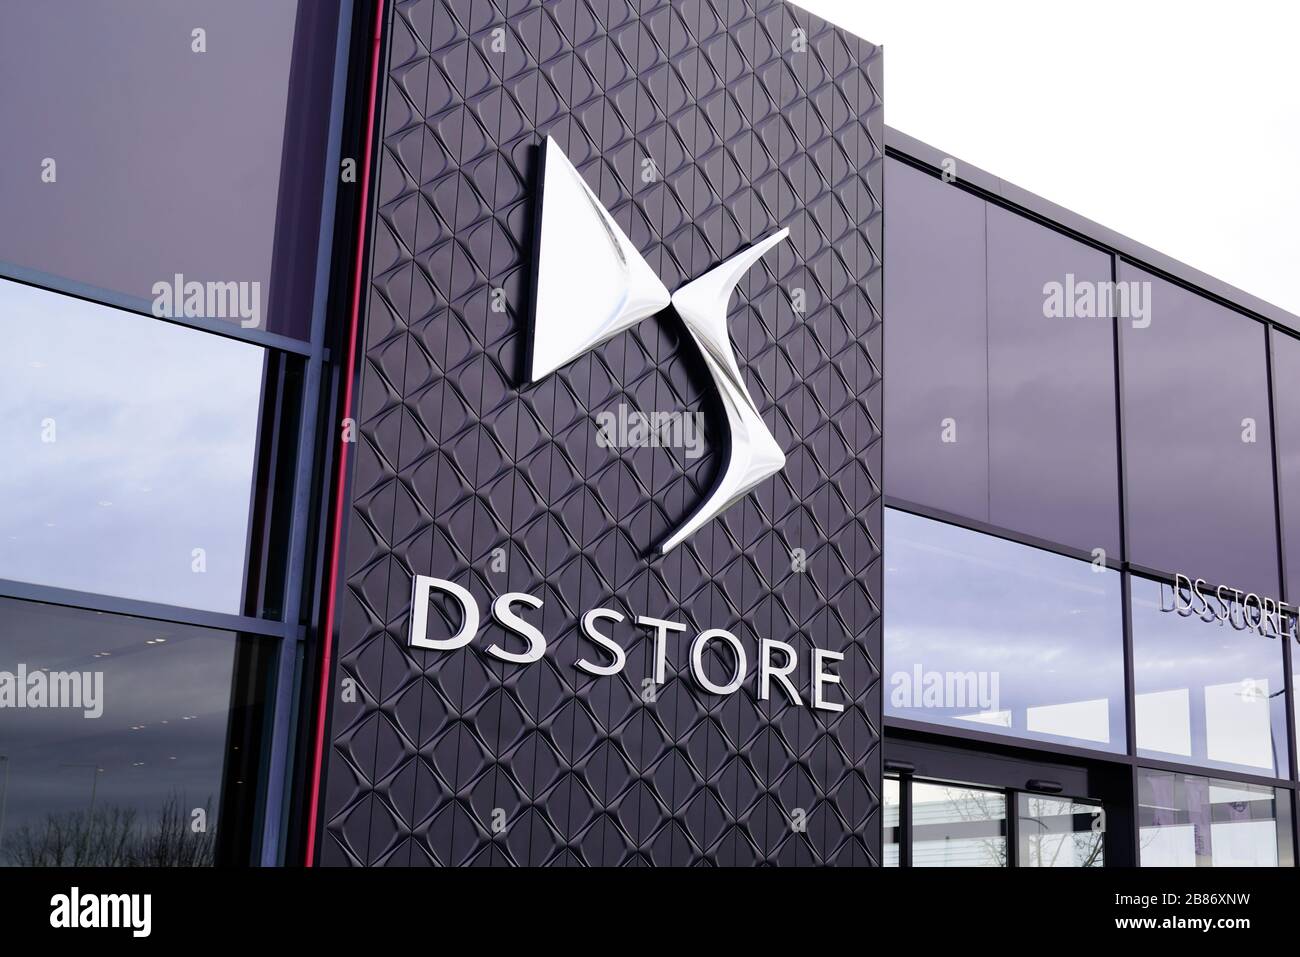 Bordeaux , Aquitaine / France - 01 15 2020 : DS store logo automobiles shop dealership sign shop French automobile manufacturer part of Groupe PSA Stock Photo